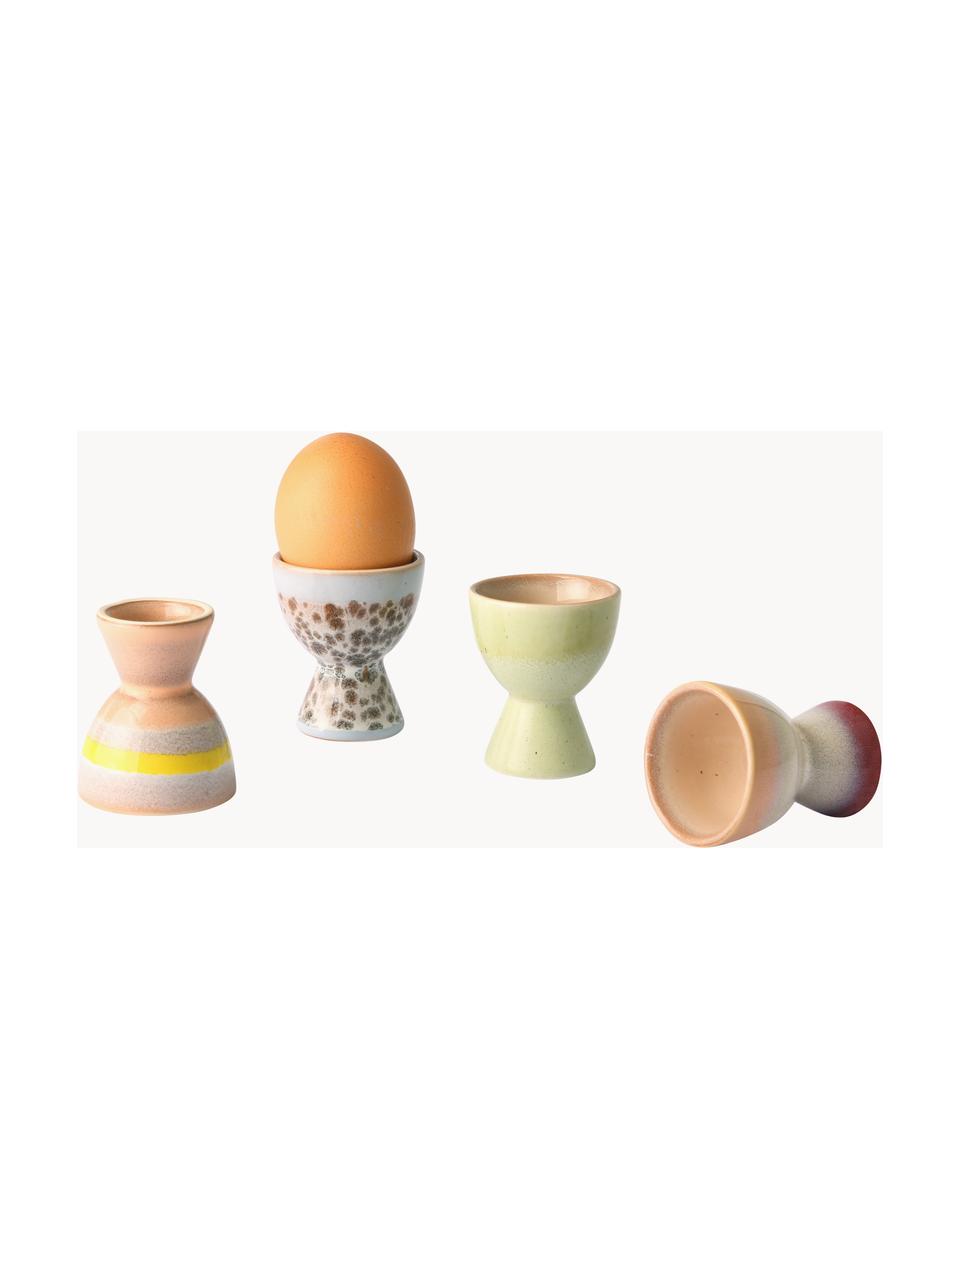 Soportes de huevo artesanles 70's, 4 uds., Cerámica de gres, Multicolor, Ø 5 x Al 6 cm